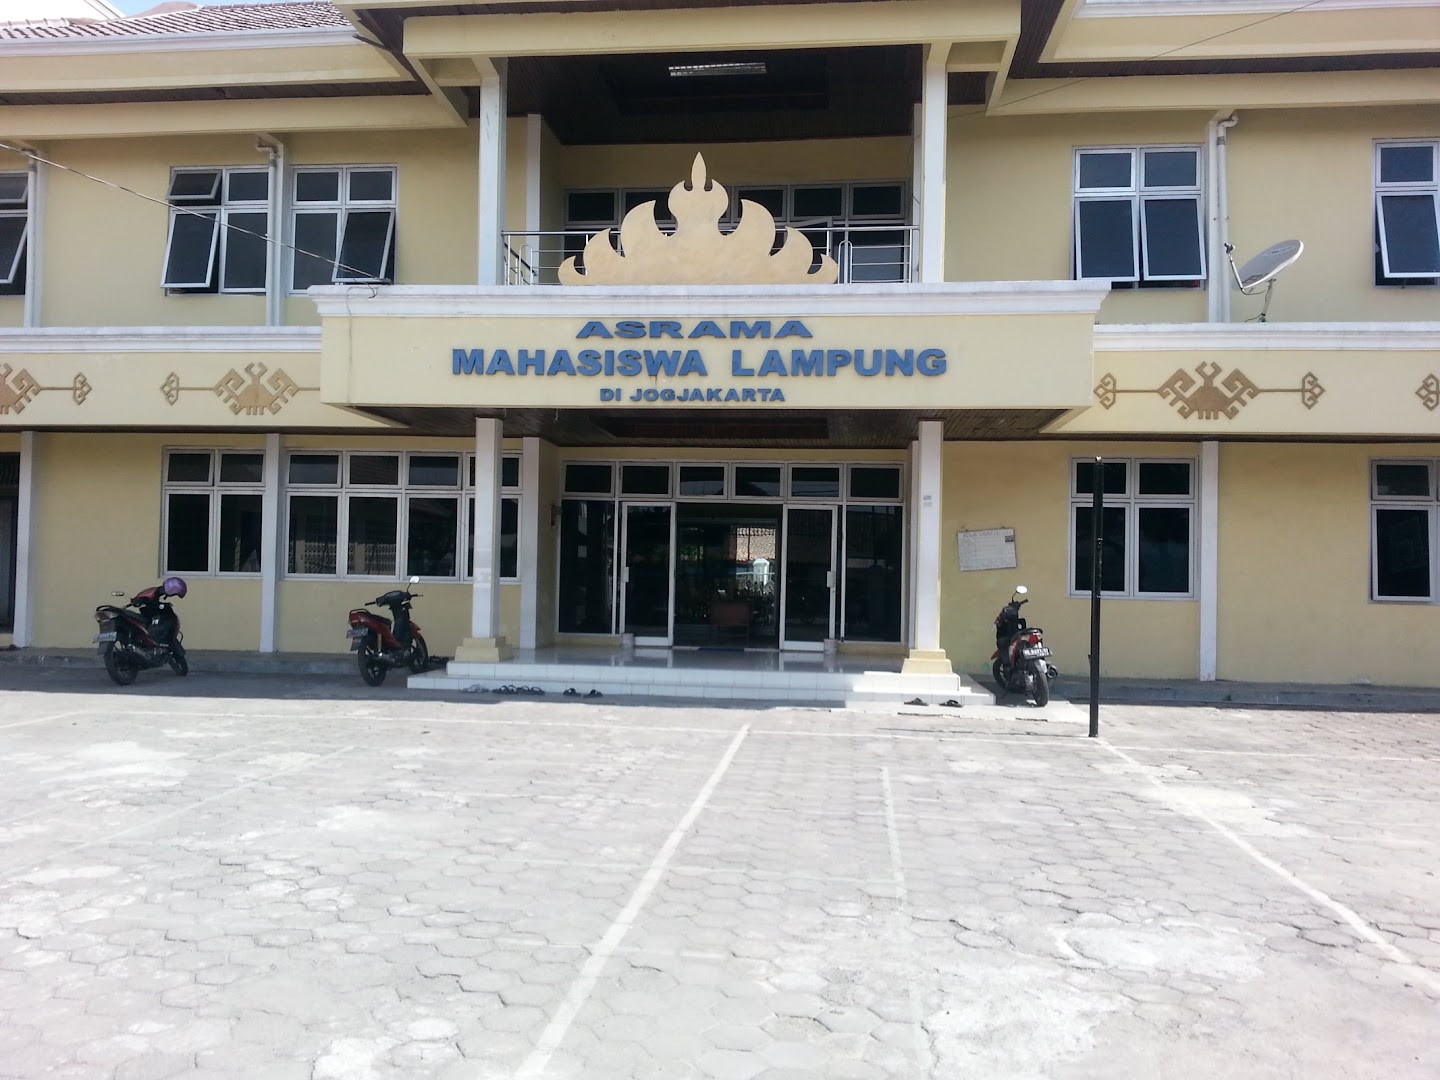 Asrama Mahasiswa Lampung Photo